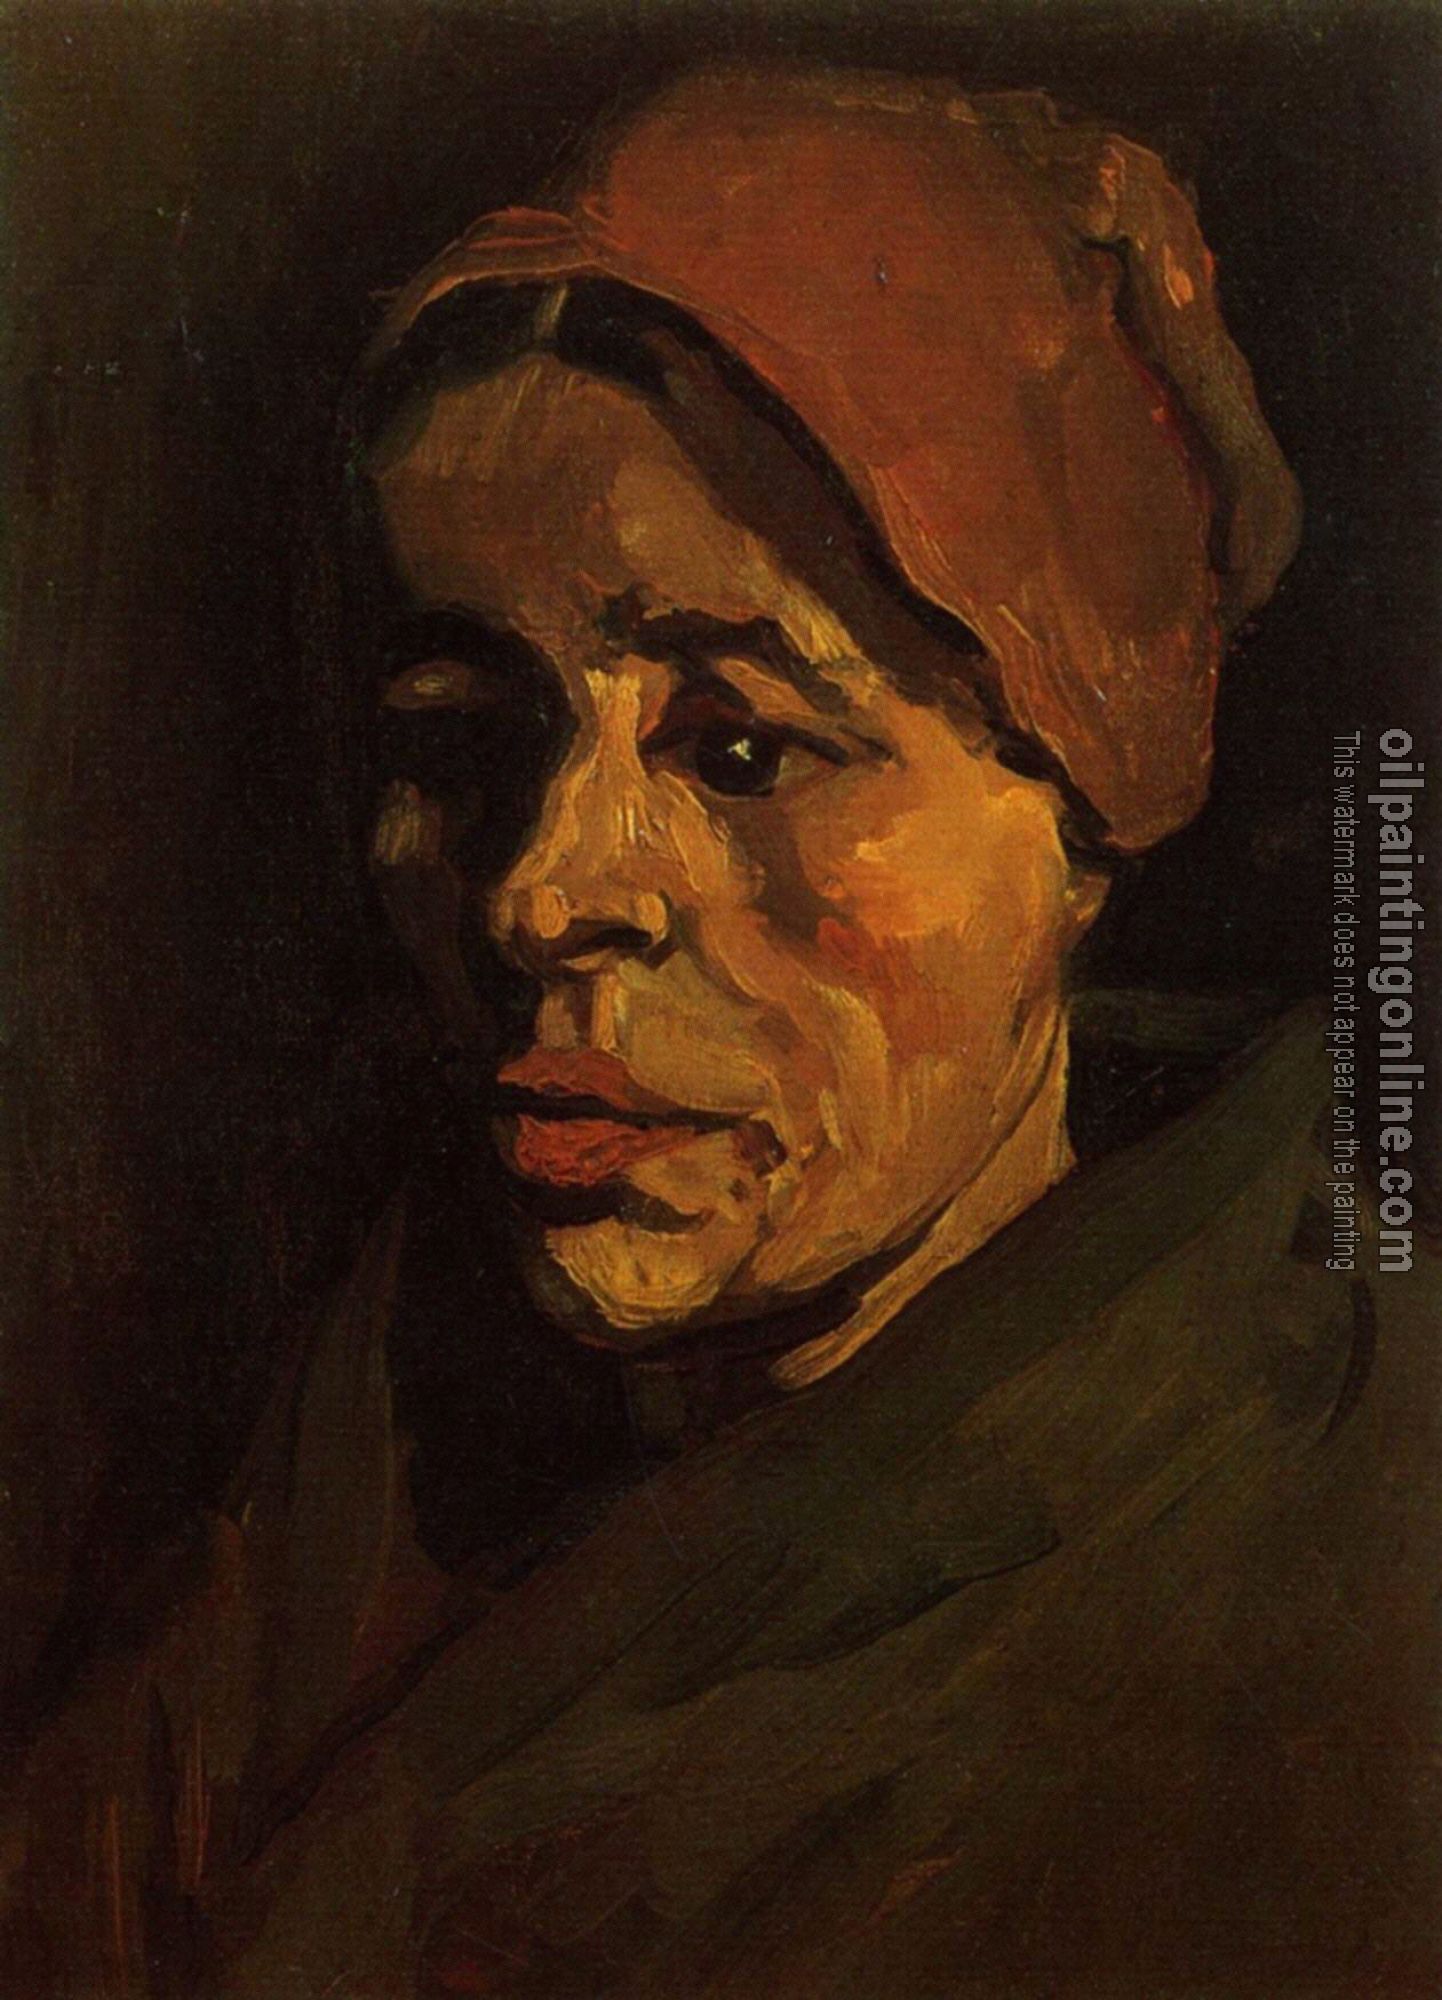 Gogh, Vincent van - Peasant Woman,Head